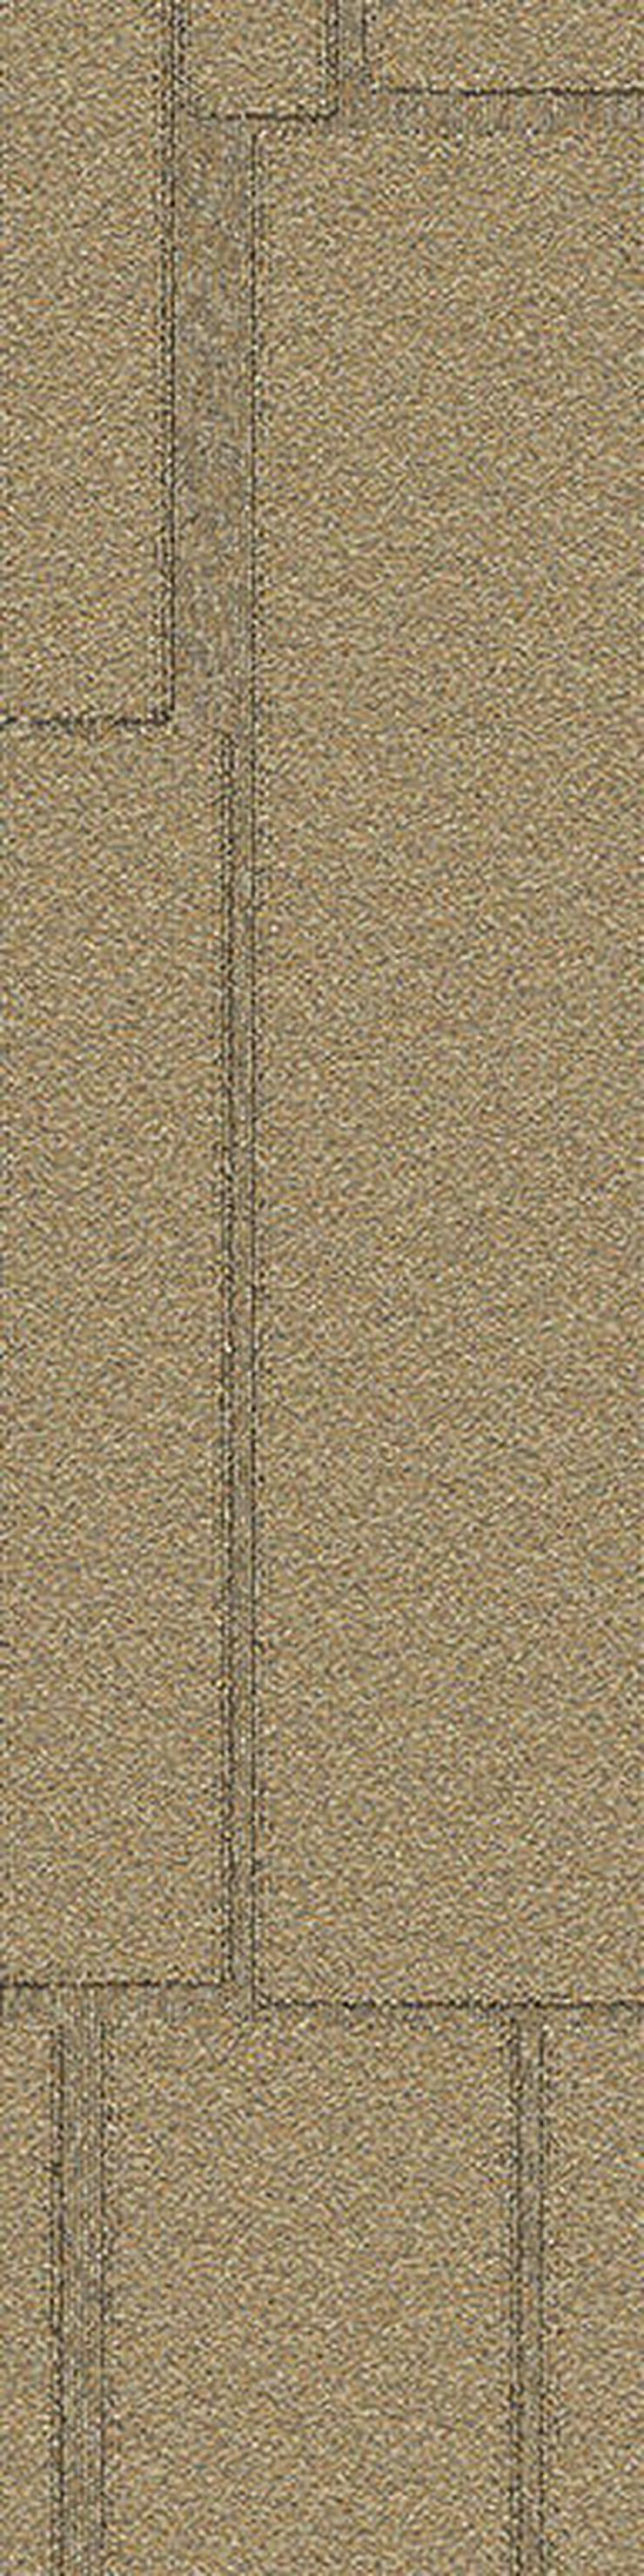 25 x 100cm Teppichfliesen mit schönem Muster * ANGEBOT! - Teppiche - Bild 8